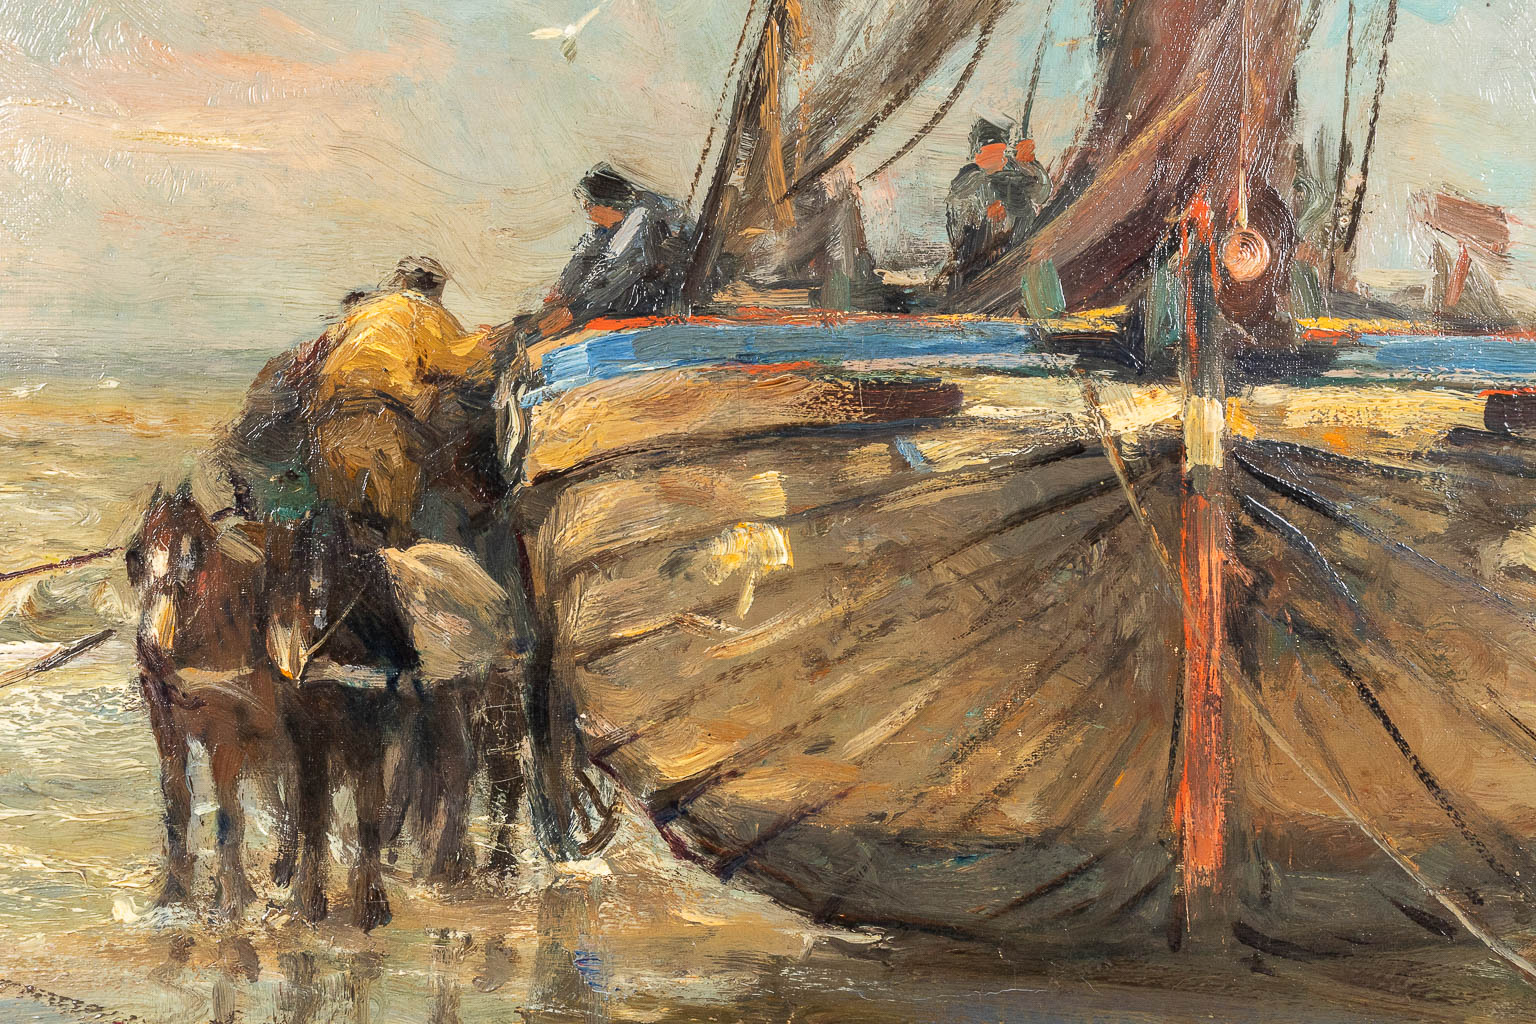 Franz COURTENS (1854-1943) 'Bateau de pêche à la côte' oil on canvas. (W: 84 x H: 117 cm)